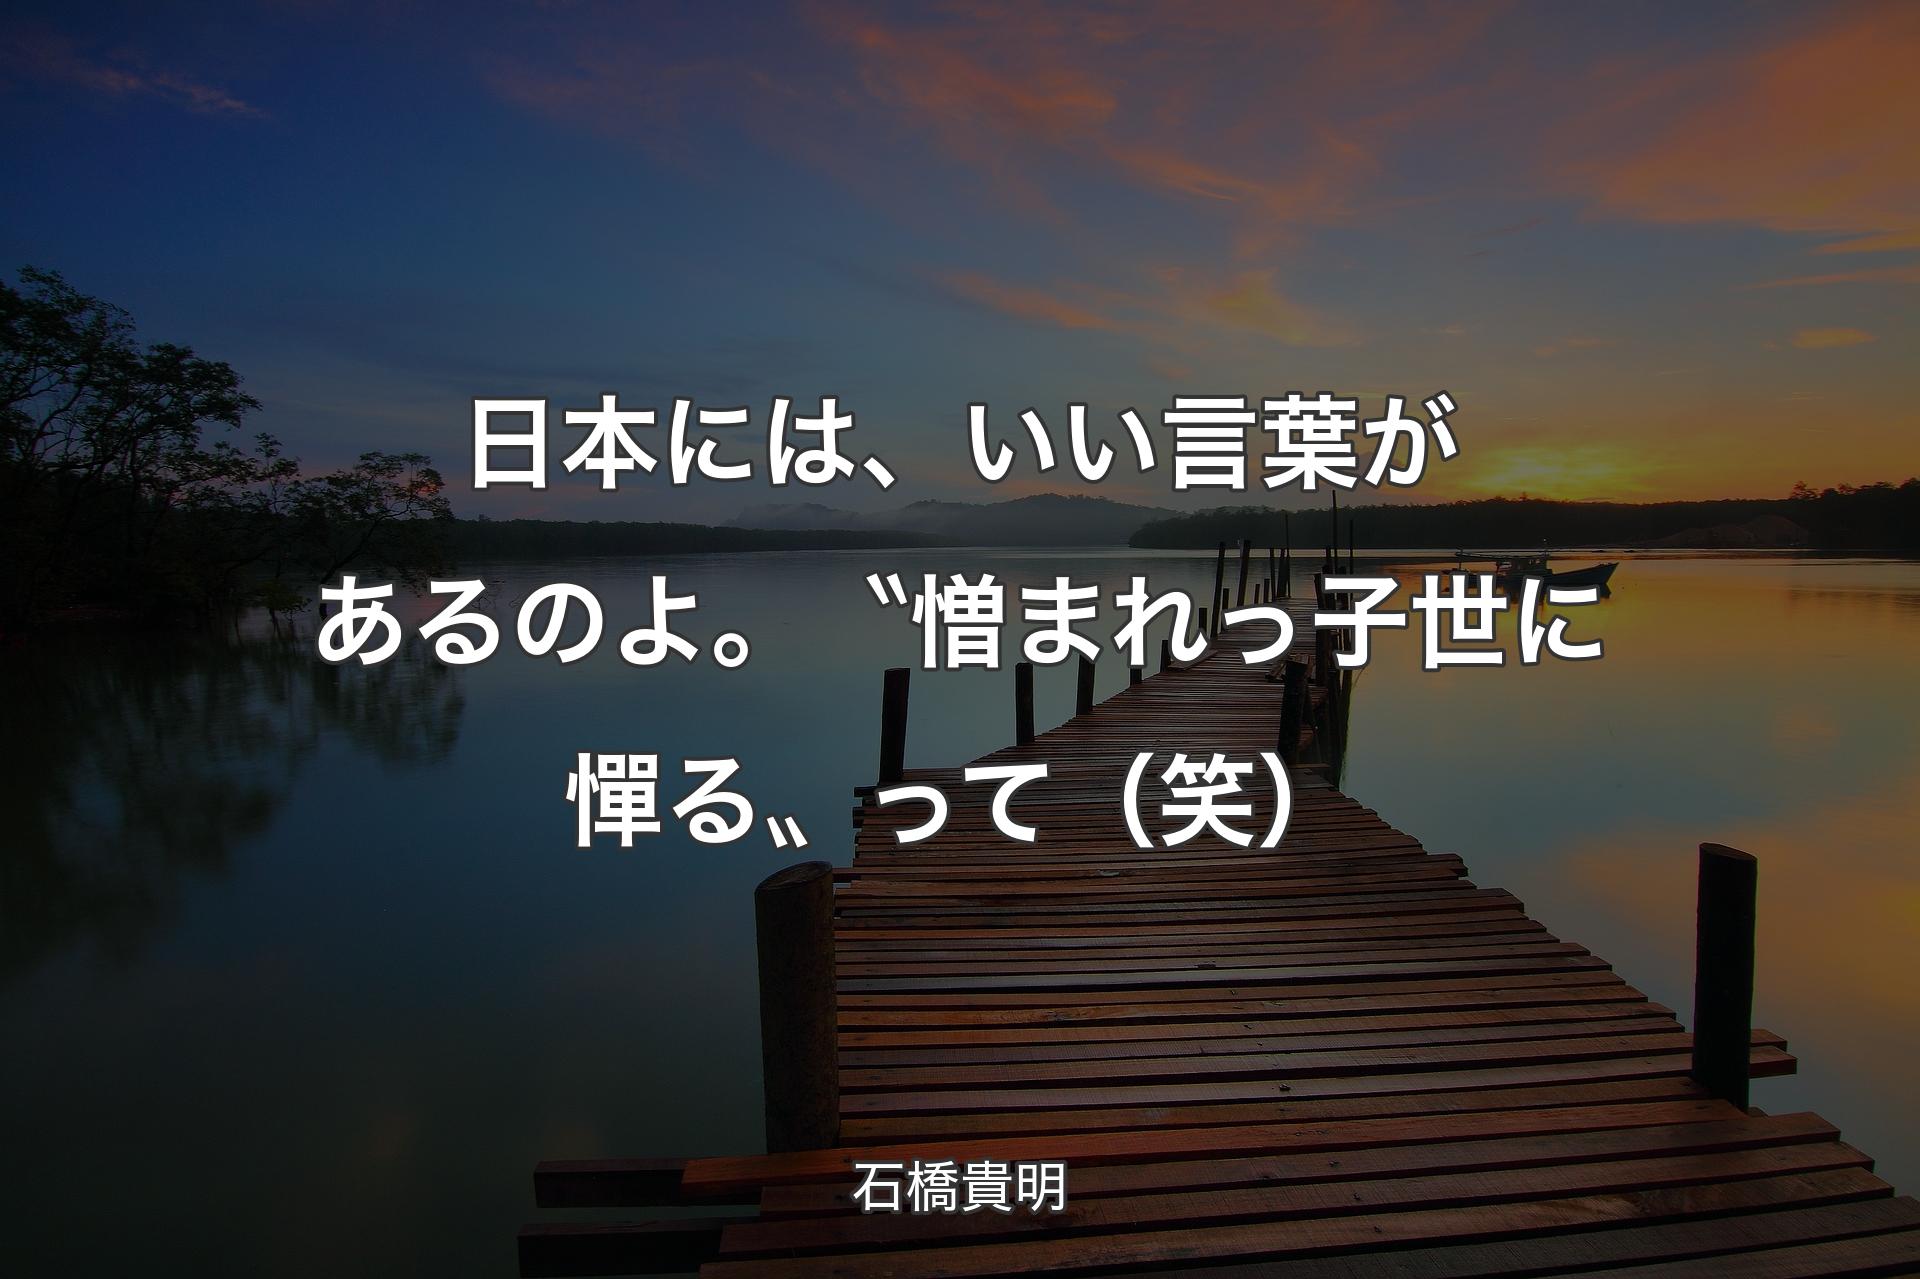 日本には、いい言葉があるのよ。〝憎まれっ子世に憚る〟って（笑） - 石橋貴明